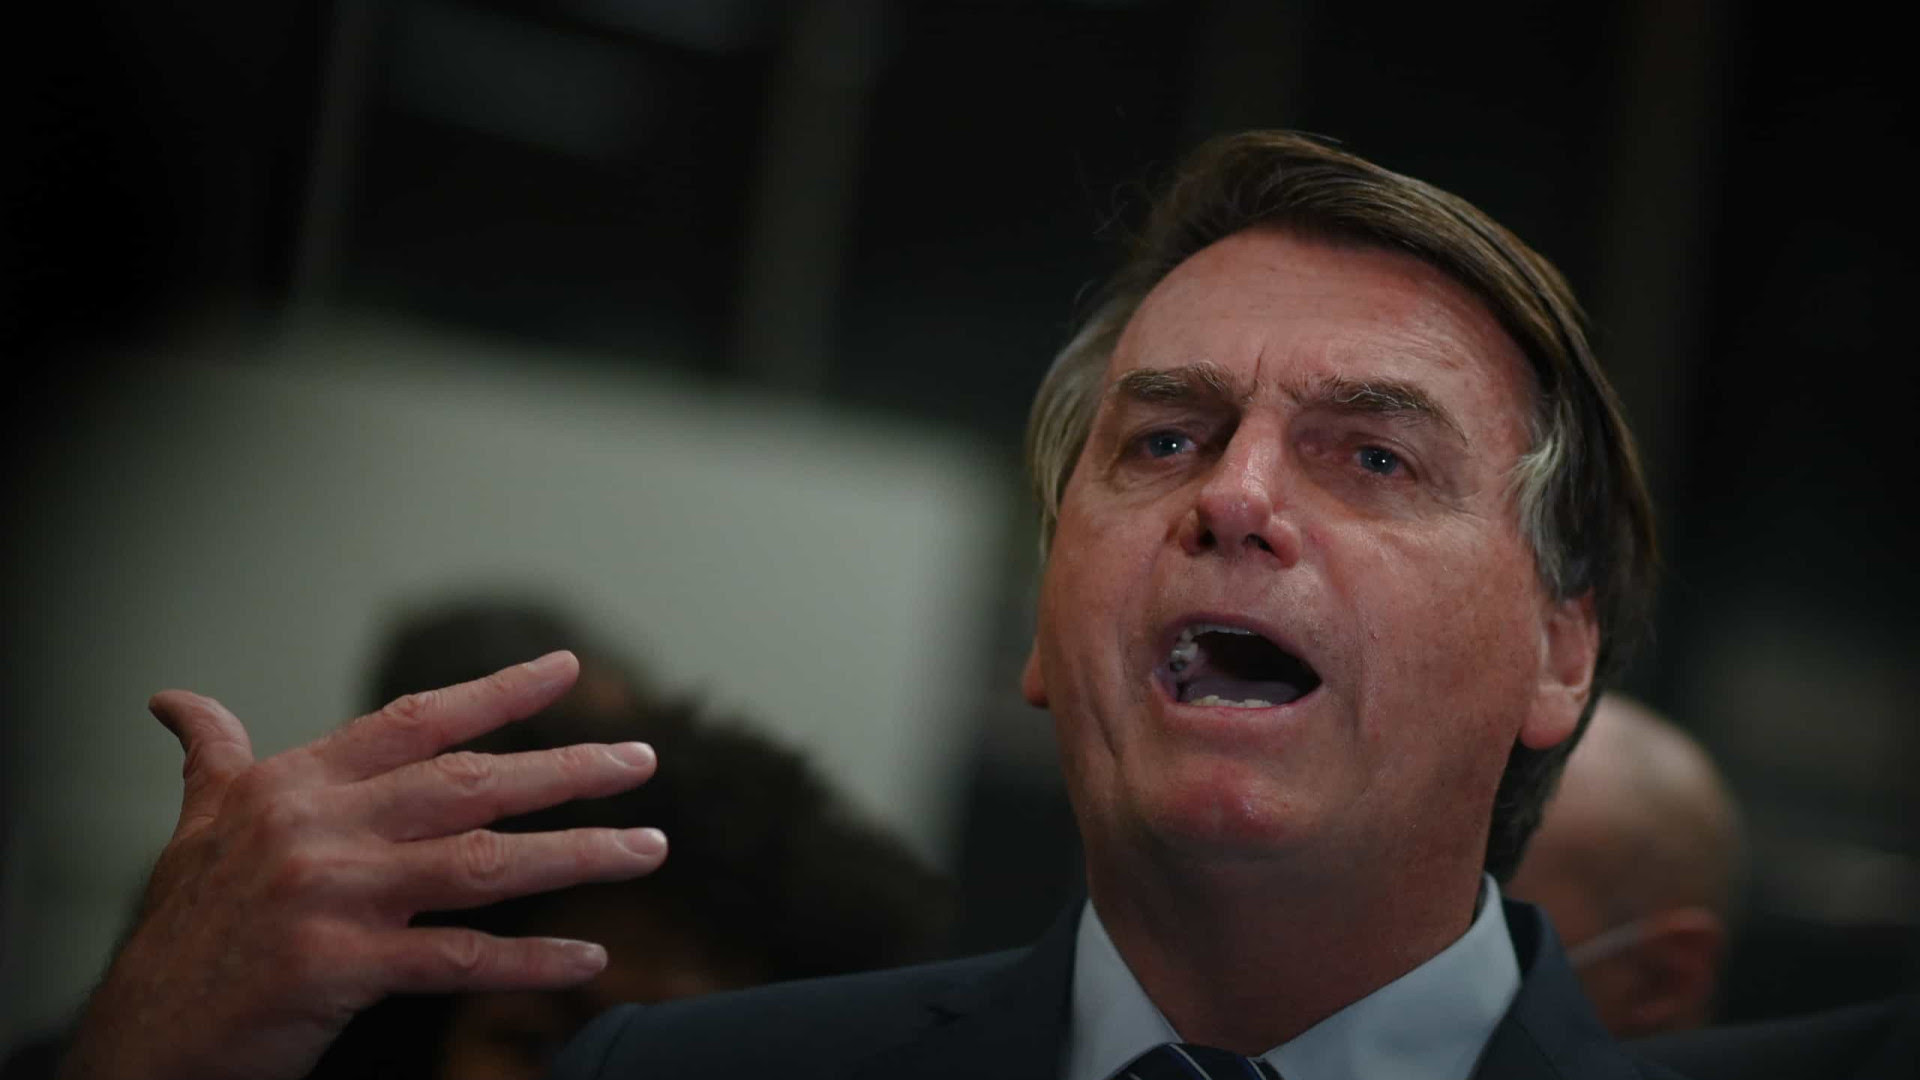 'Se quer paz, se prepare para a guerra', diz Bolsonaro em evento militar no Rio